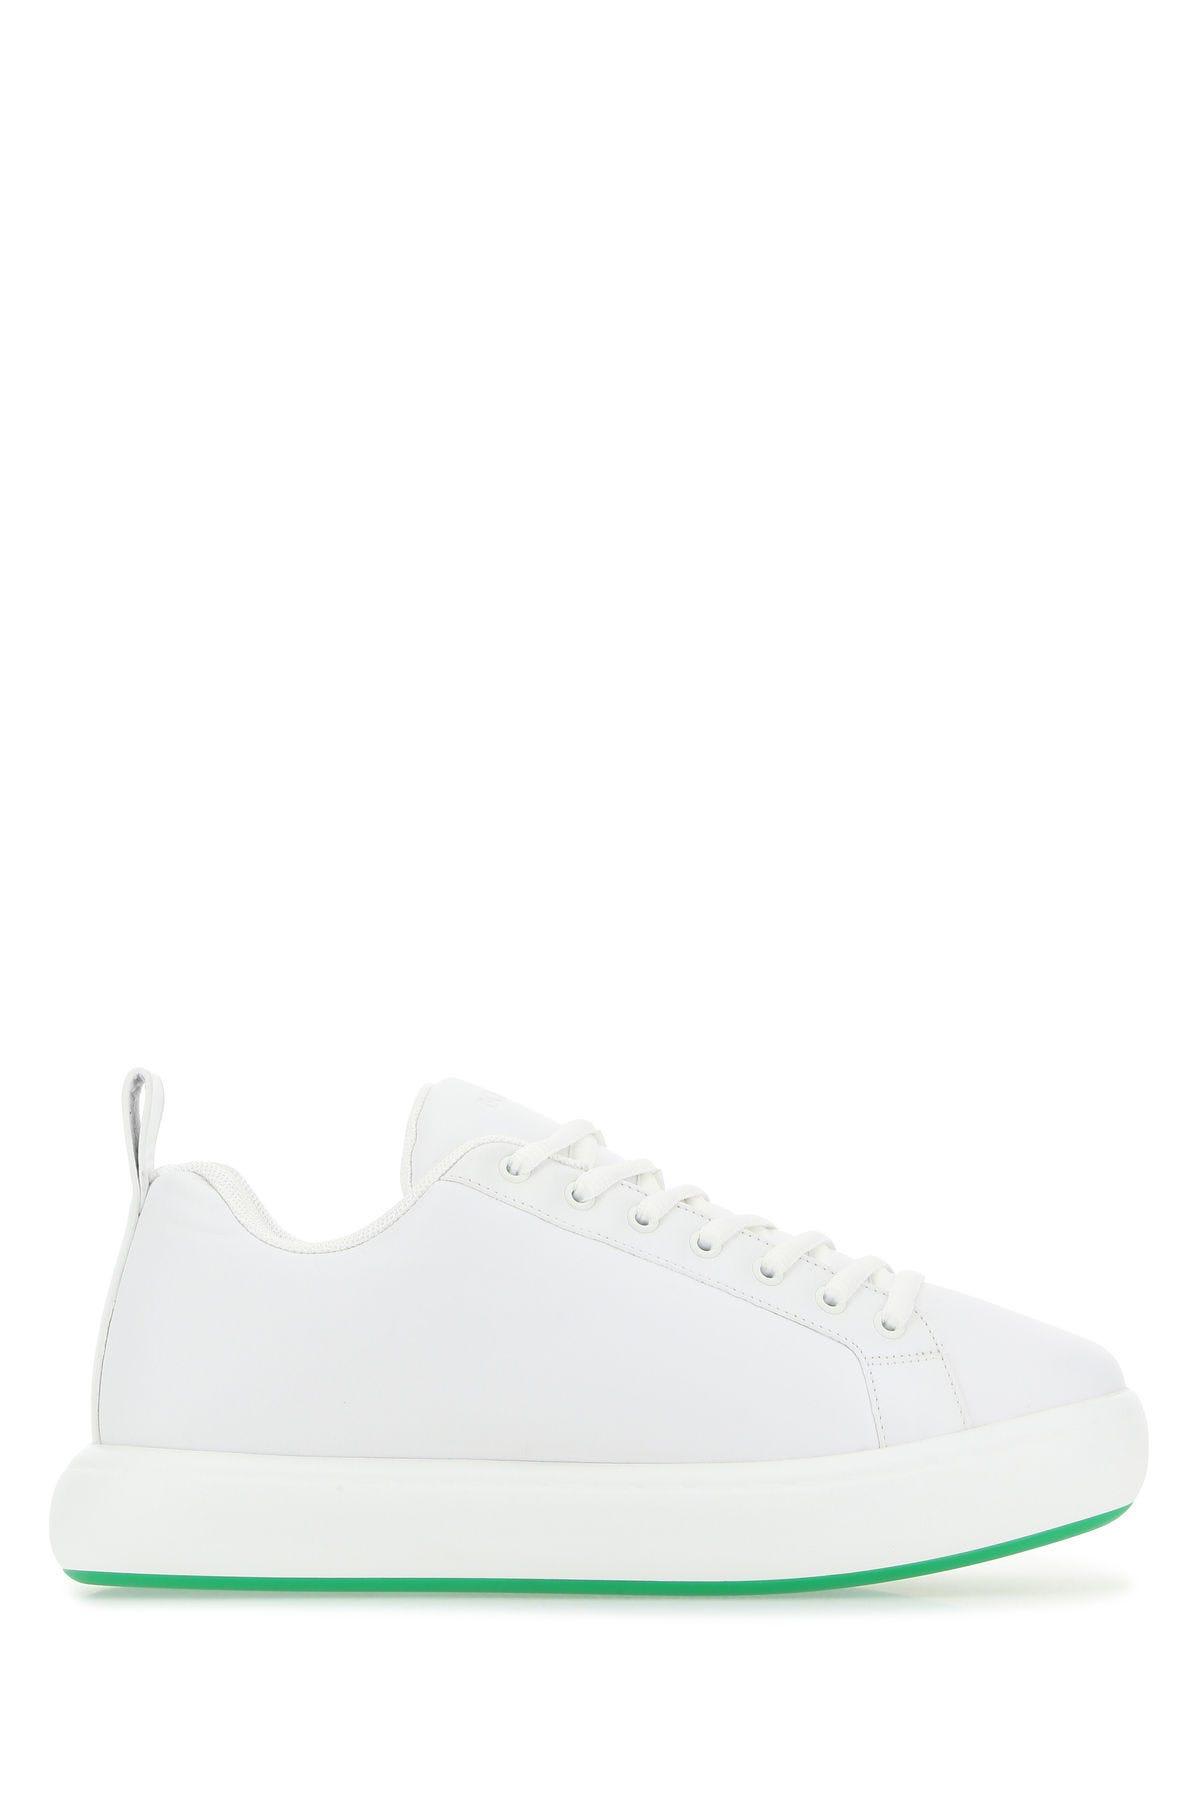 Shop Bottega Veneta White Leather Tennis Sneakers